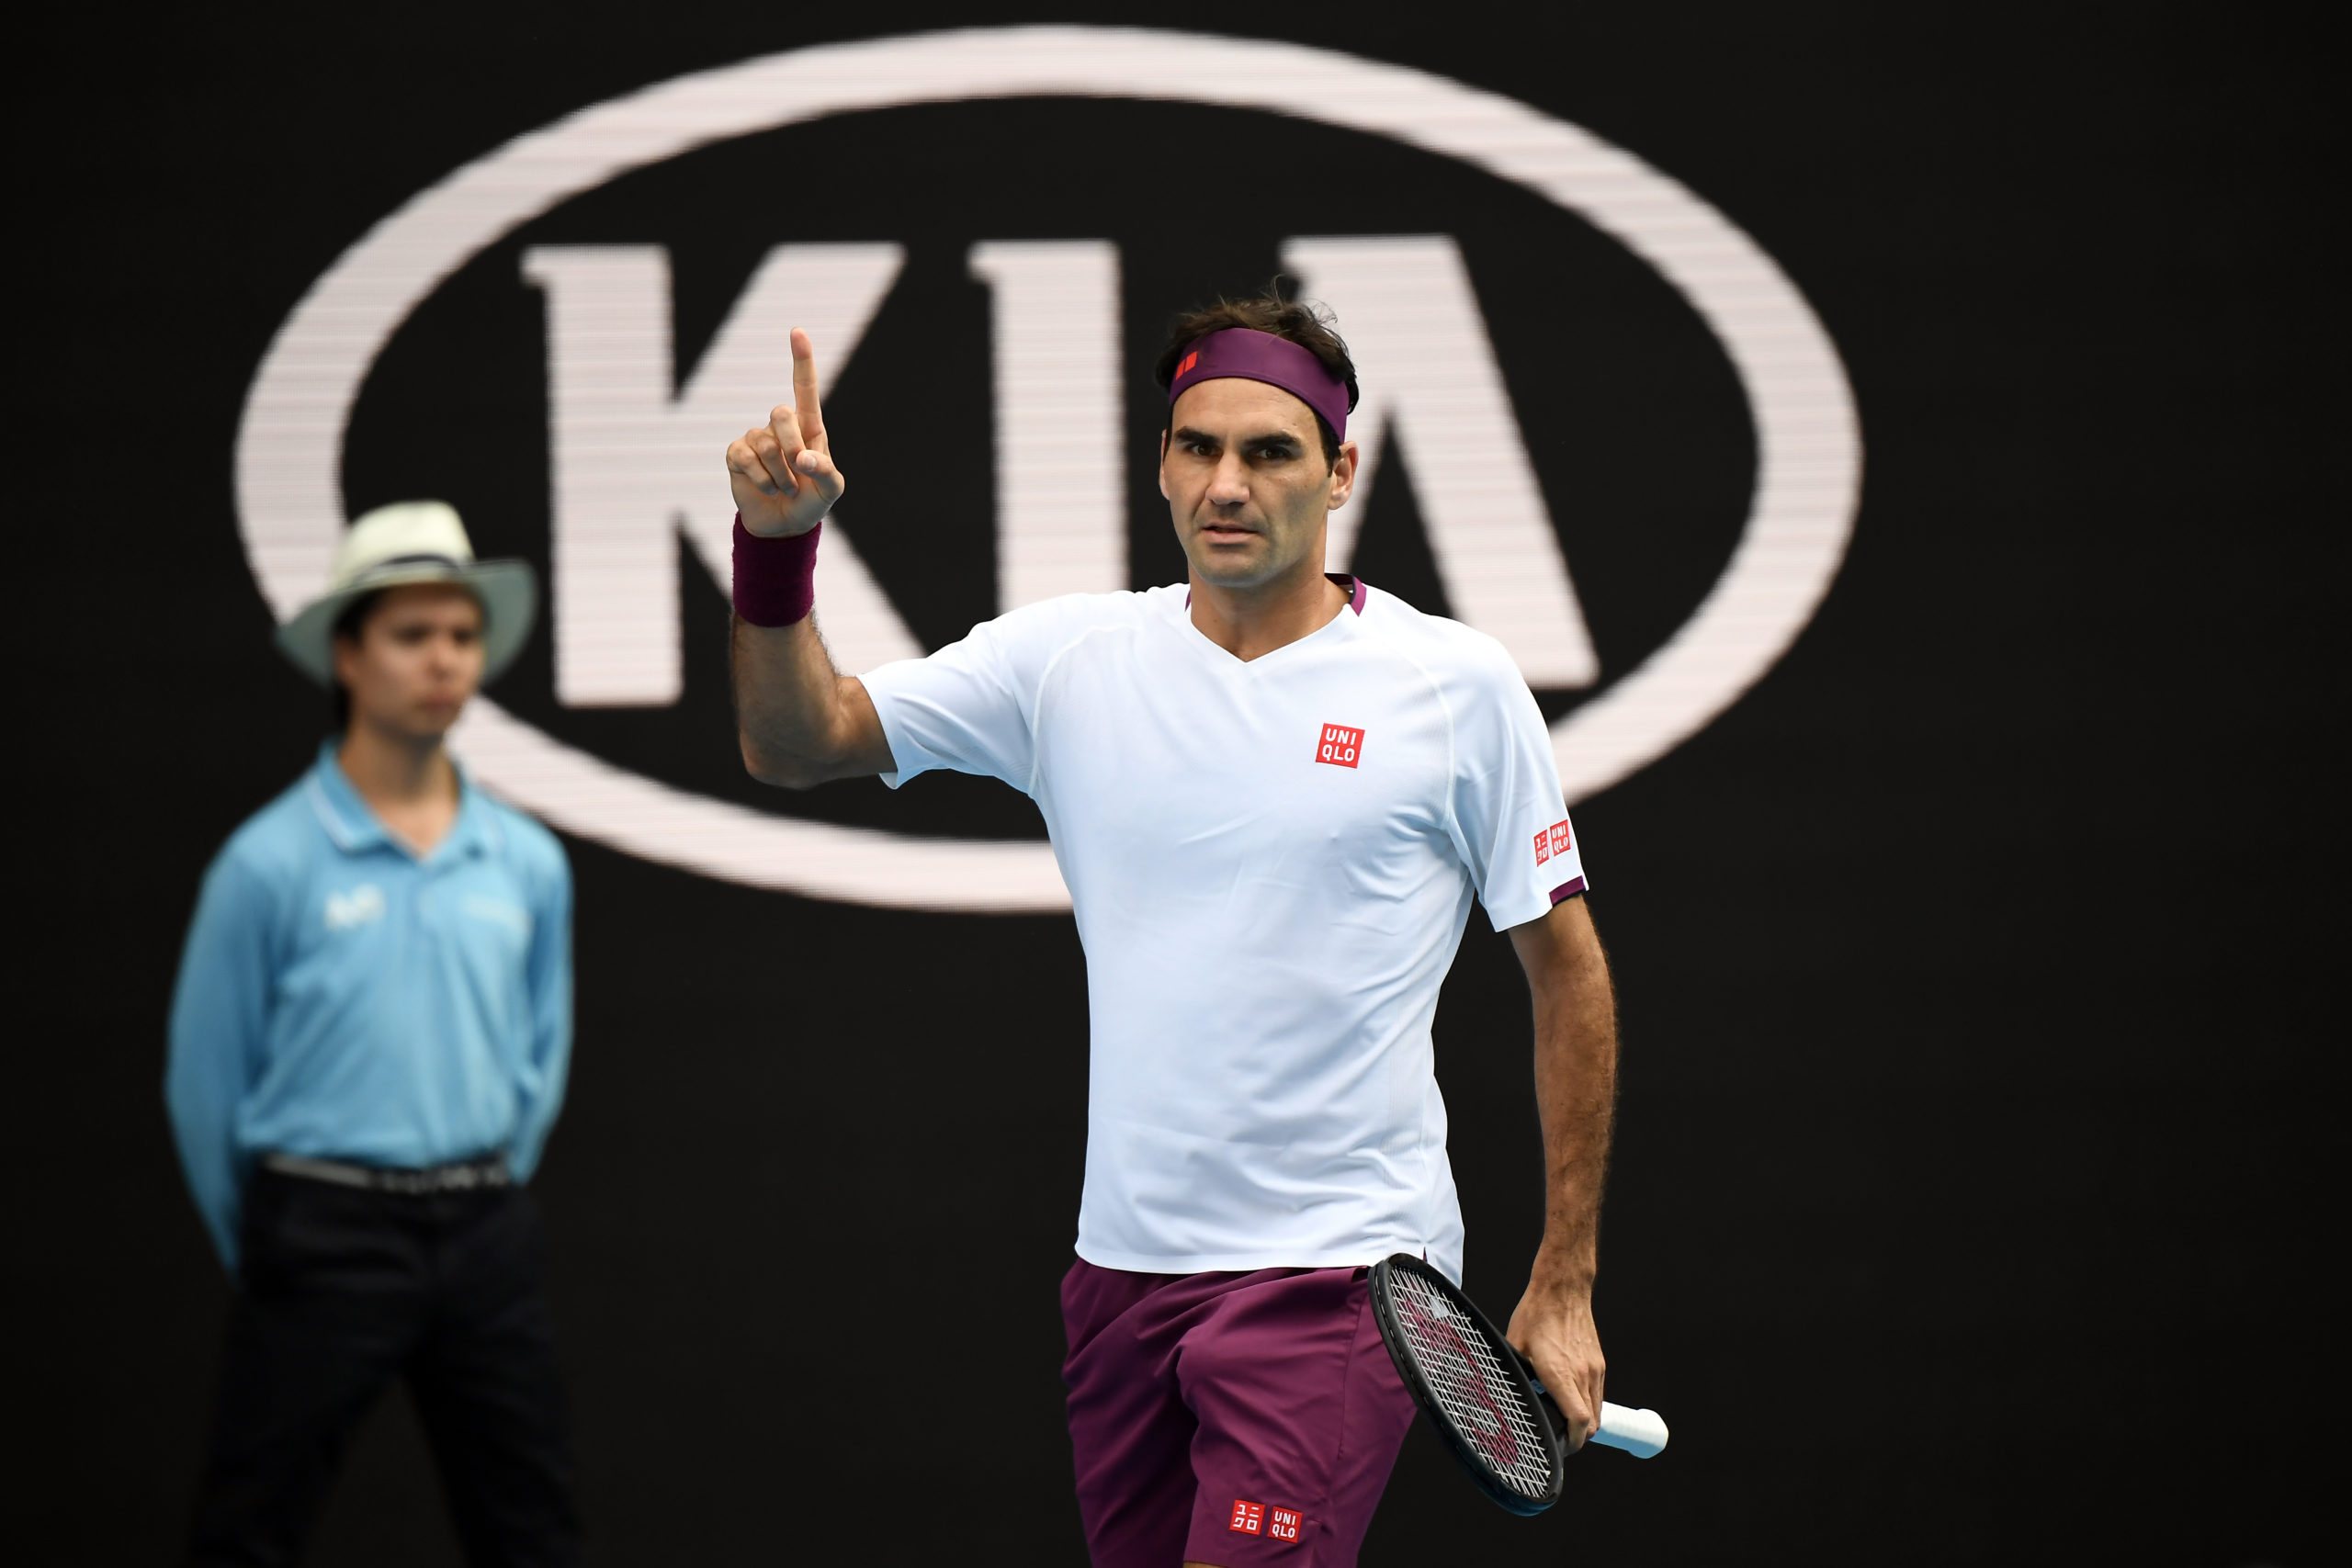 Mimo roku bez gry Federer utrzyma się w czołowej dziesiątce